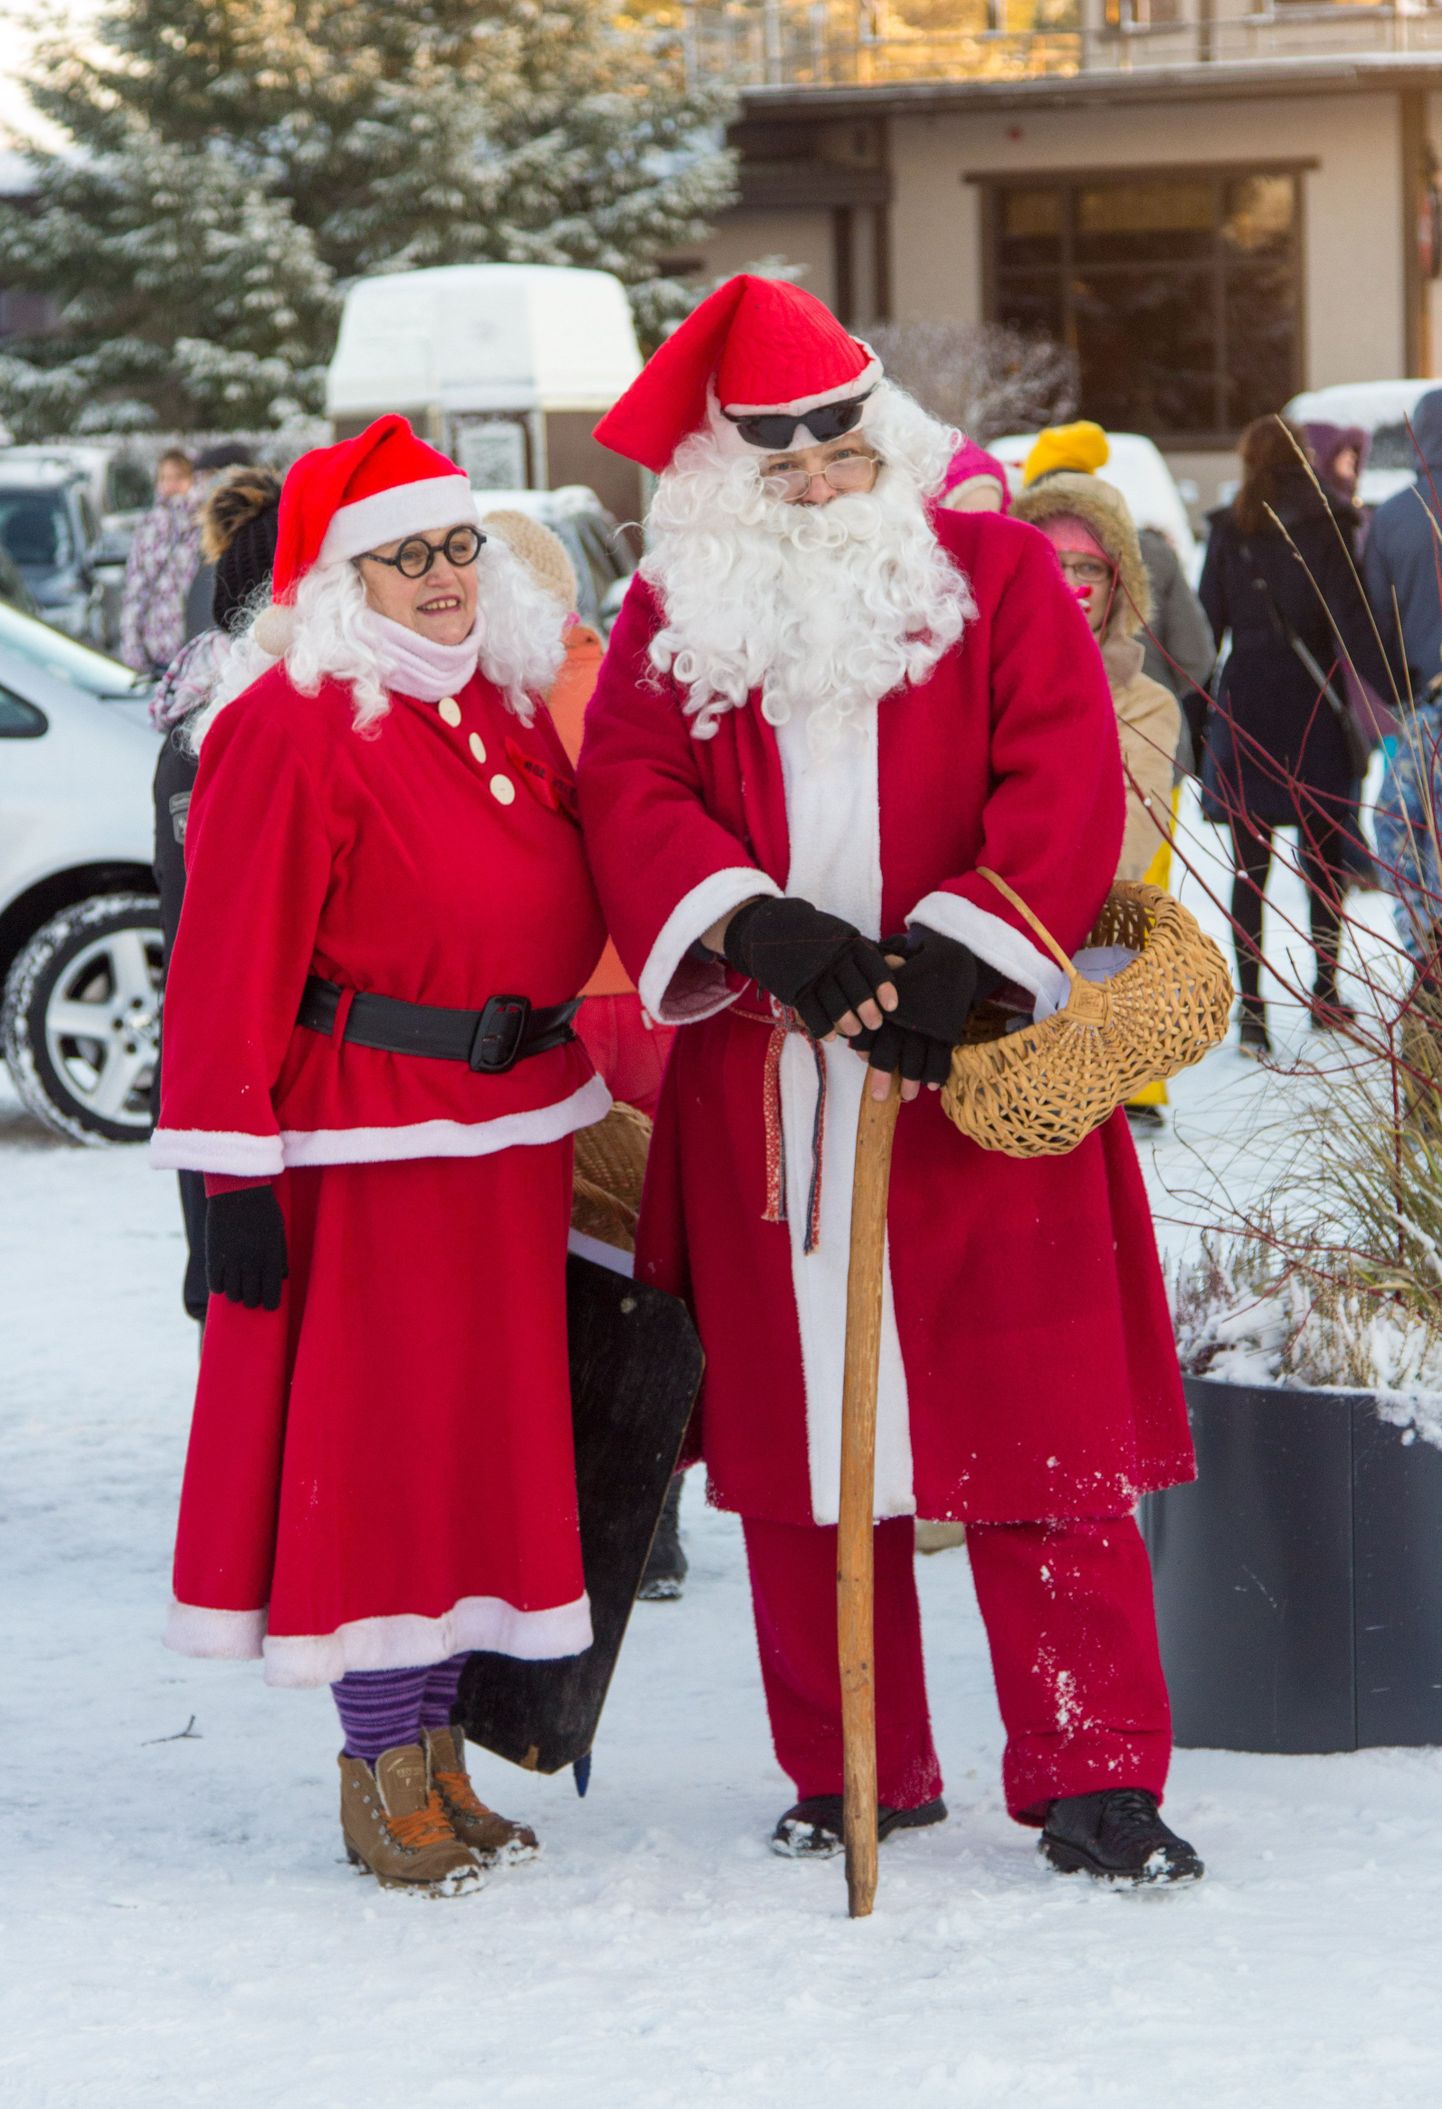 Coca-Cola poolt lood jõuluvana kujutis on sügavalt juurdunud ka eestlaste seas - nagu sai möödunud nädalavahetusel näha ka talvepealinna avaüritustel Otepääl.